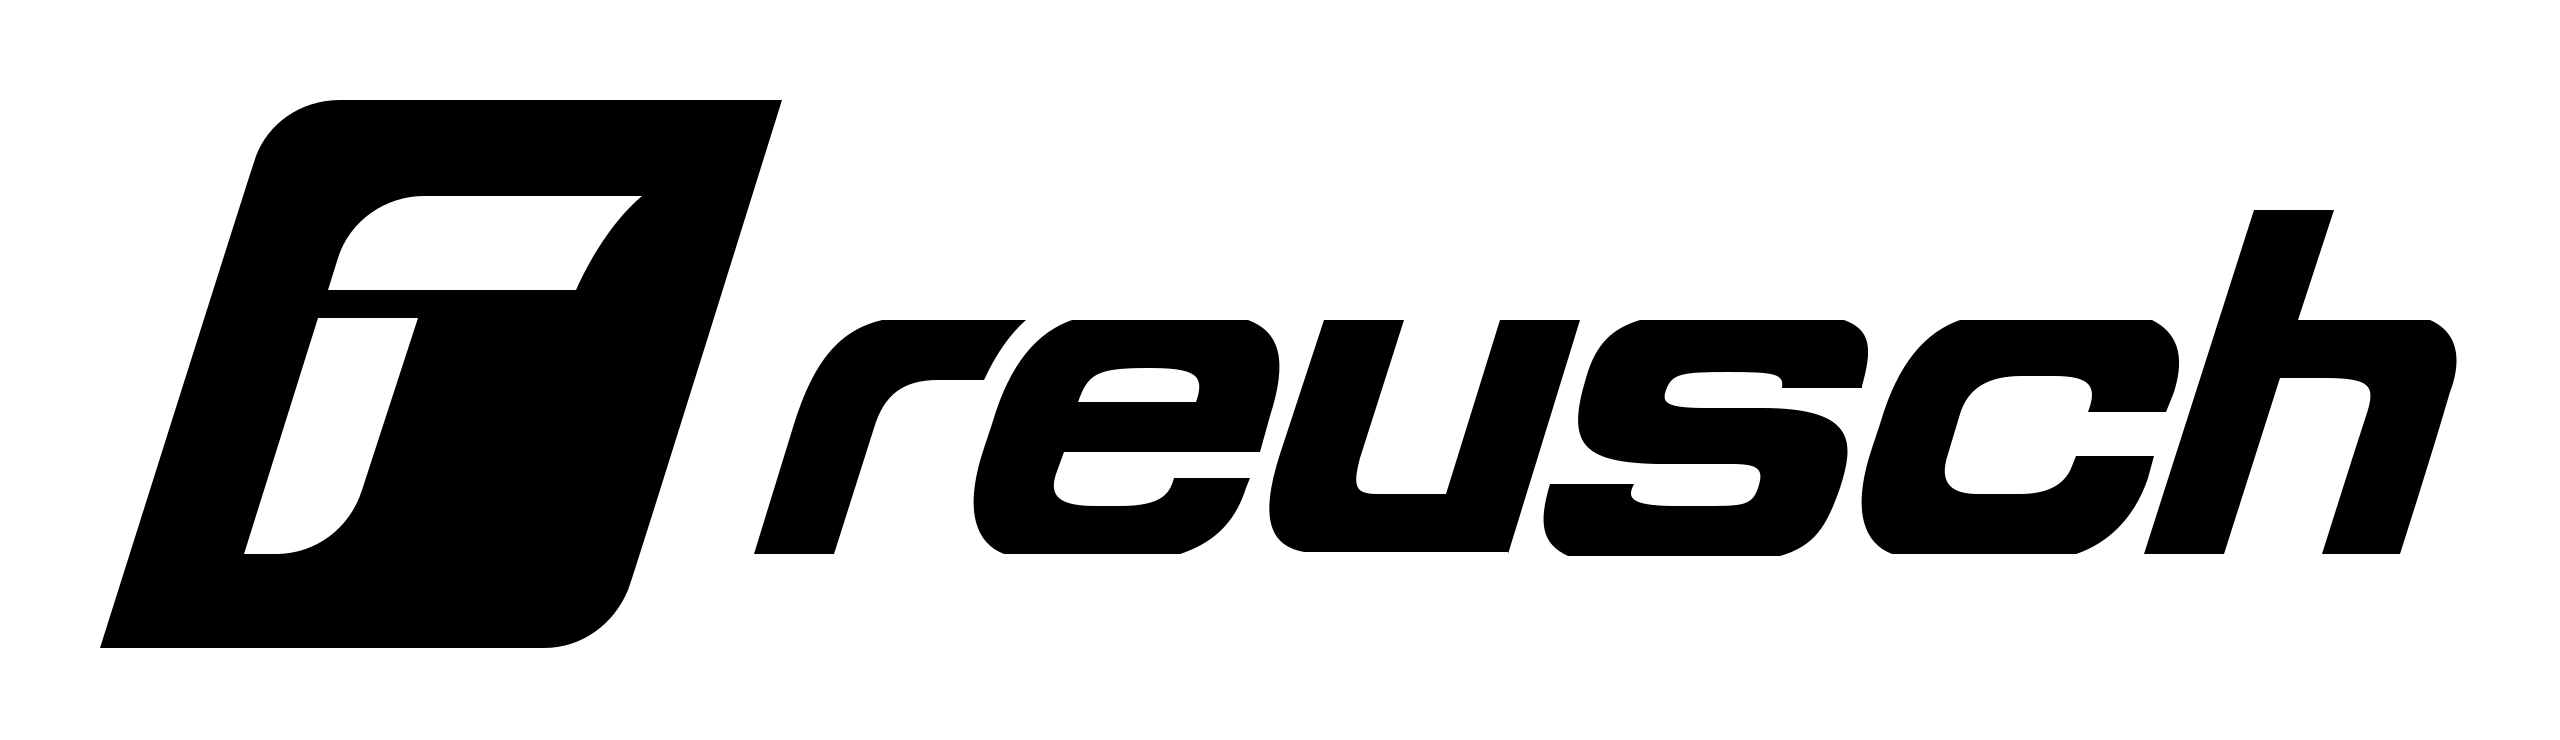 Reusch logo.png (33 KB)